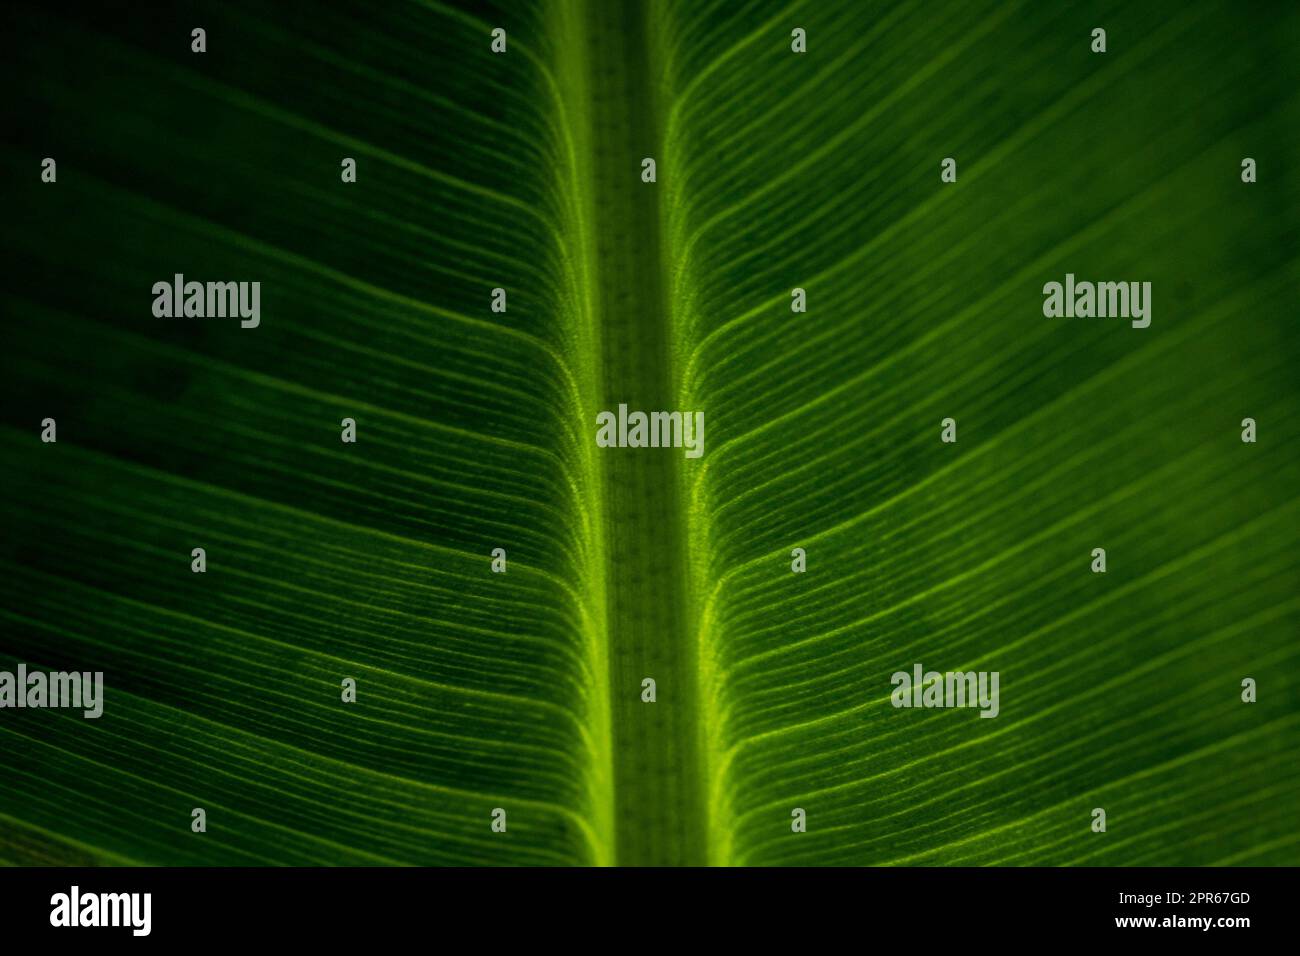 Closeup astratto di foglia verde con motivo venoso piuma Foto Stock